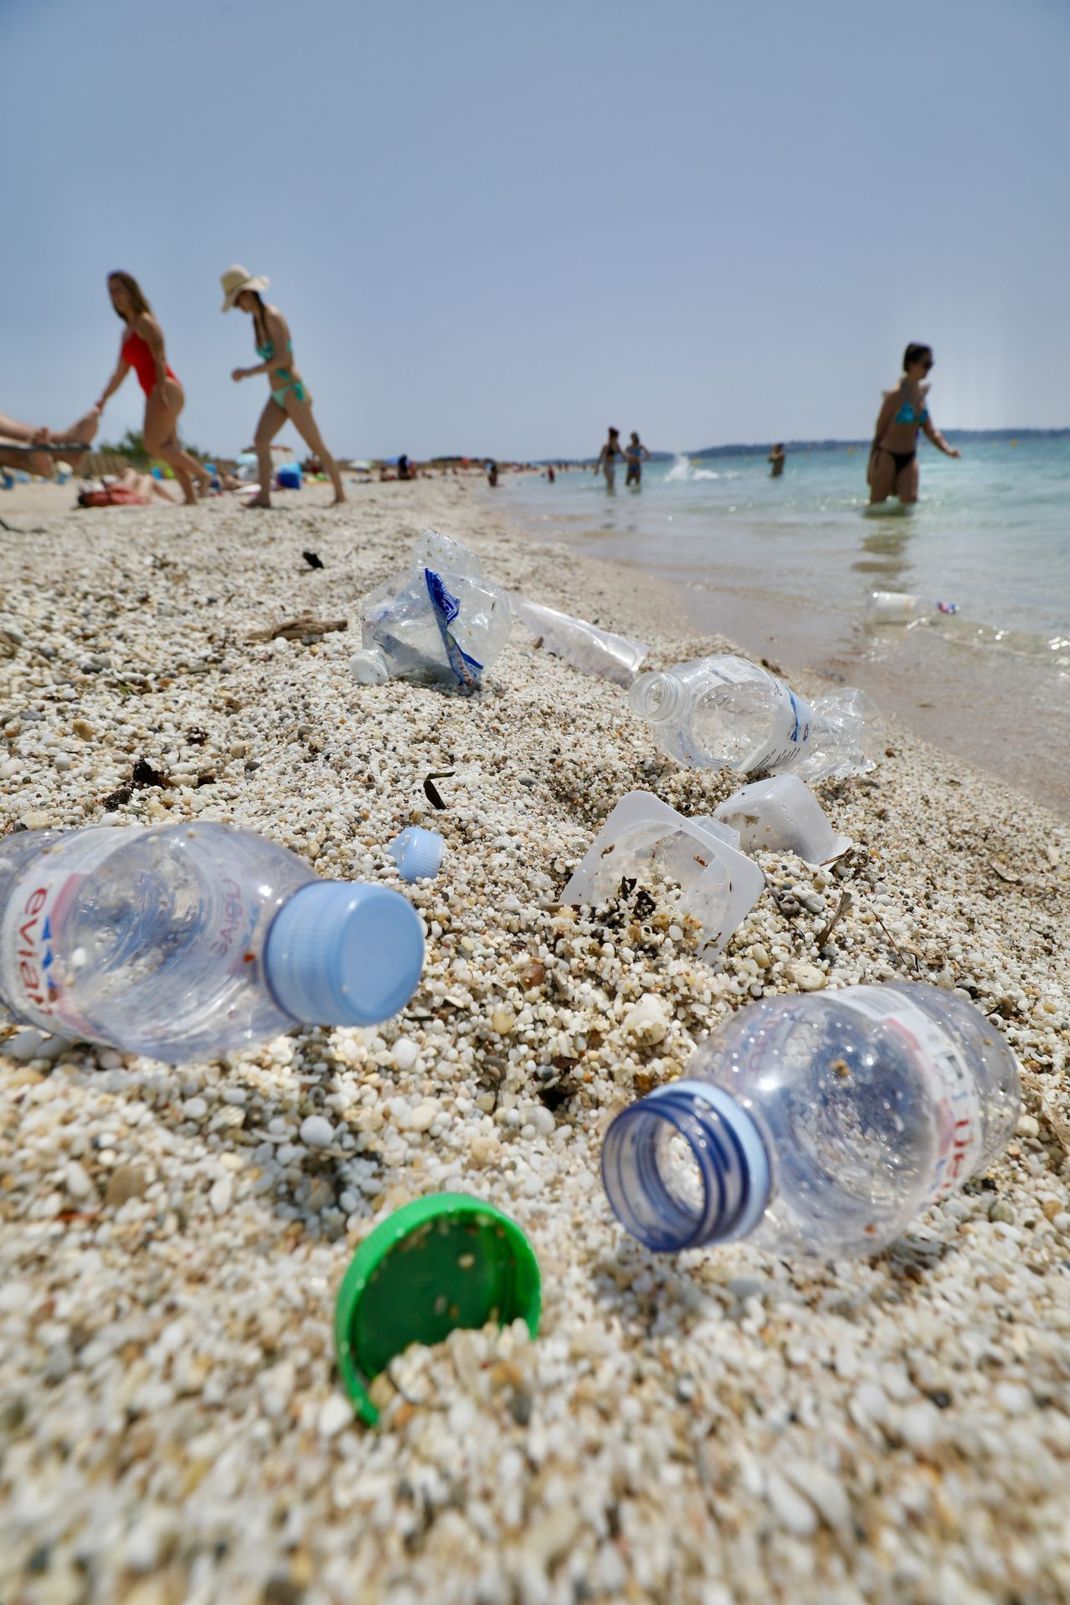 Während Flaschen noch leicht aufzusammeln sind, werden kleine Plastikdeckel oft übersehen und landen somit am Strand oder gar im Meer. 